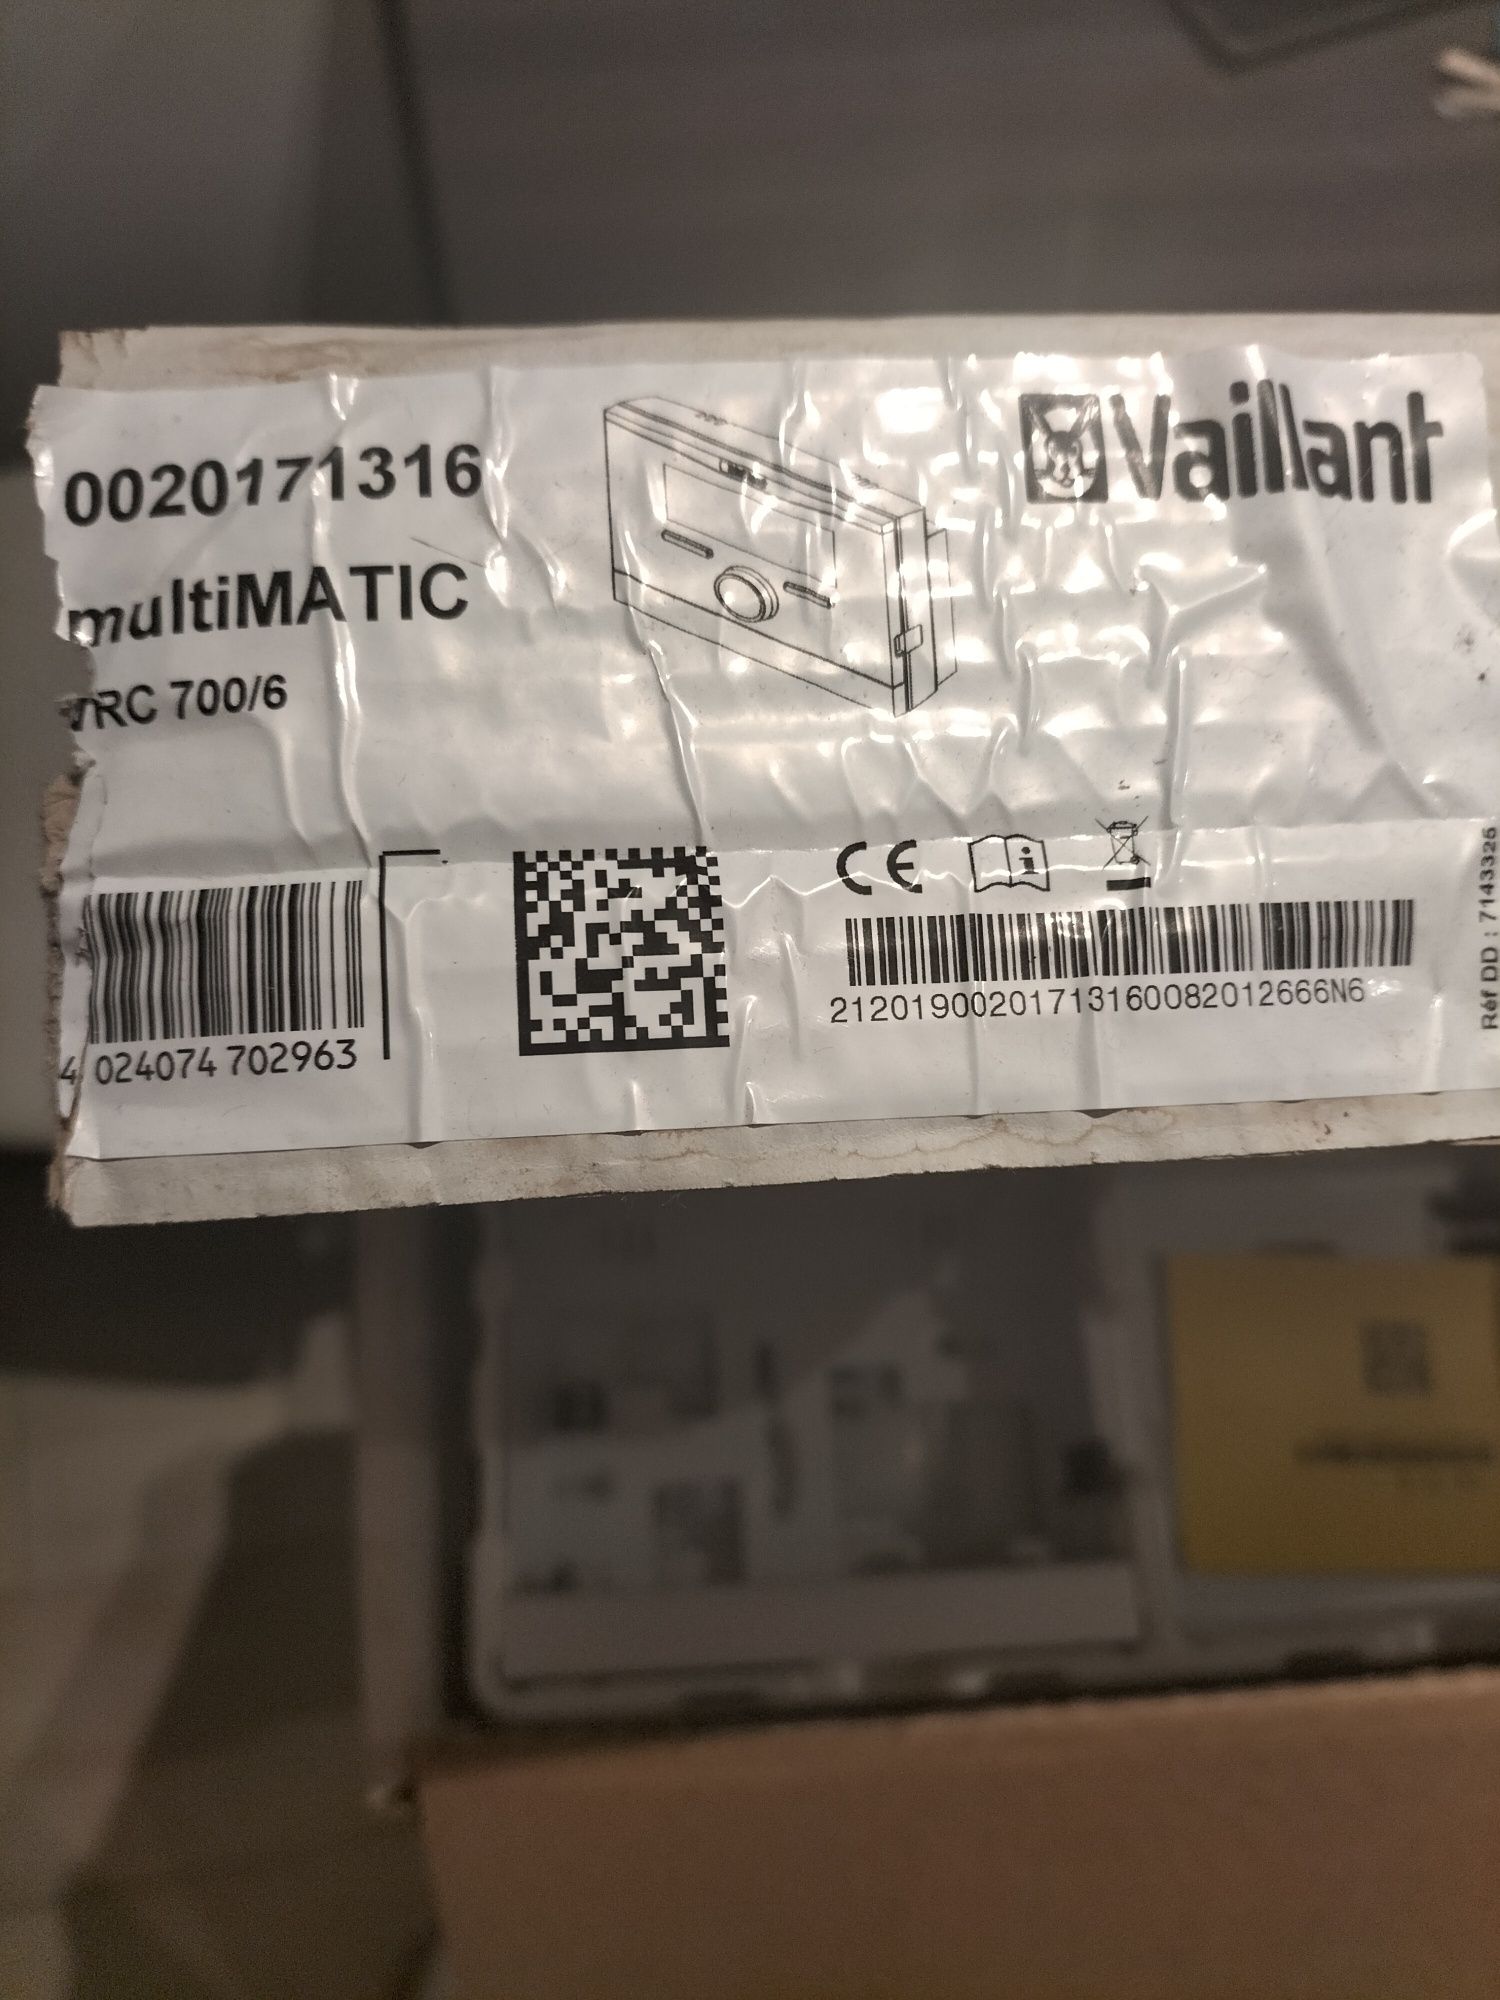 Vaillant Multimatic VRC 700/6